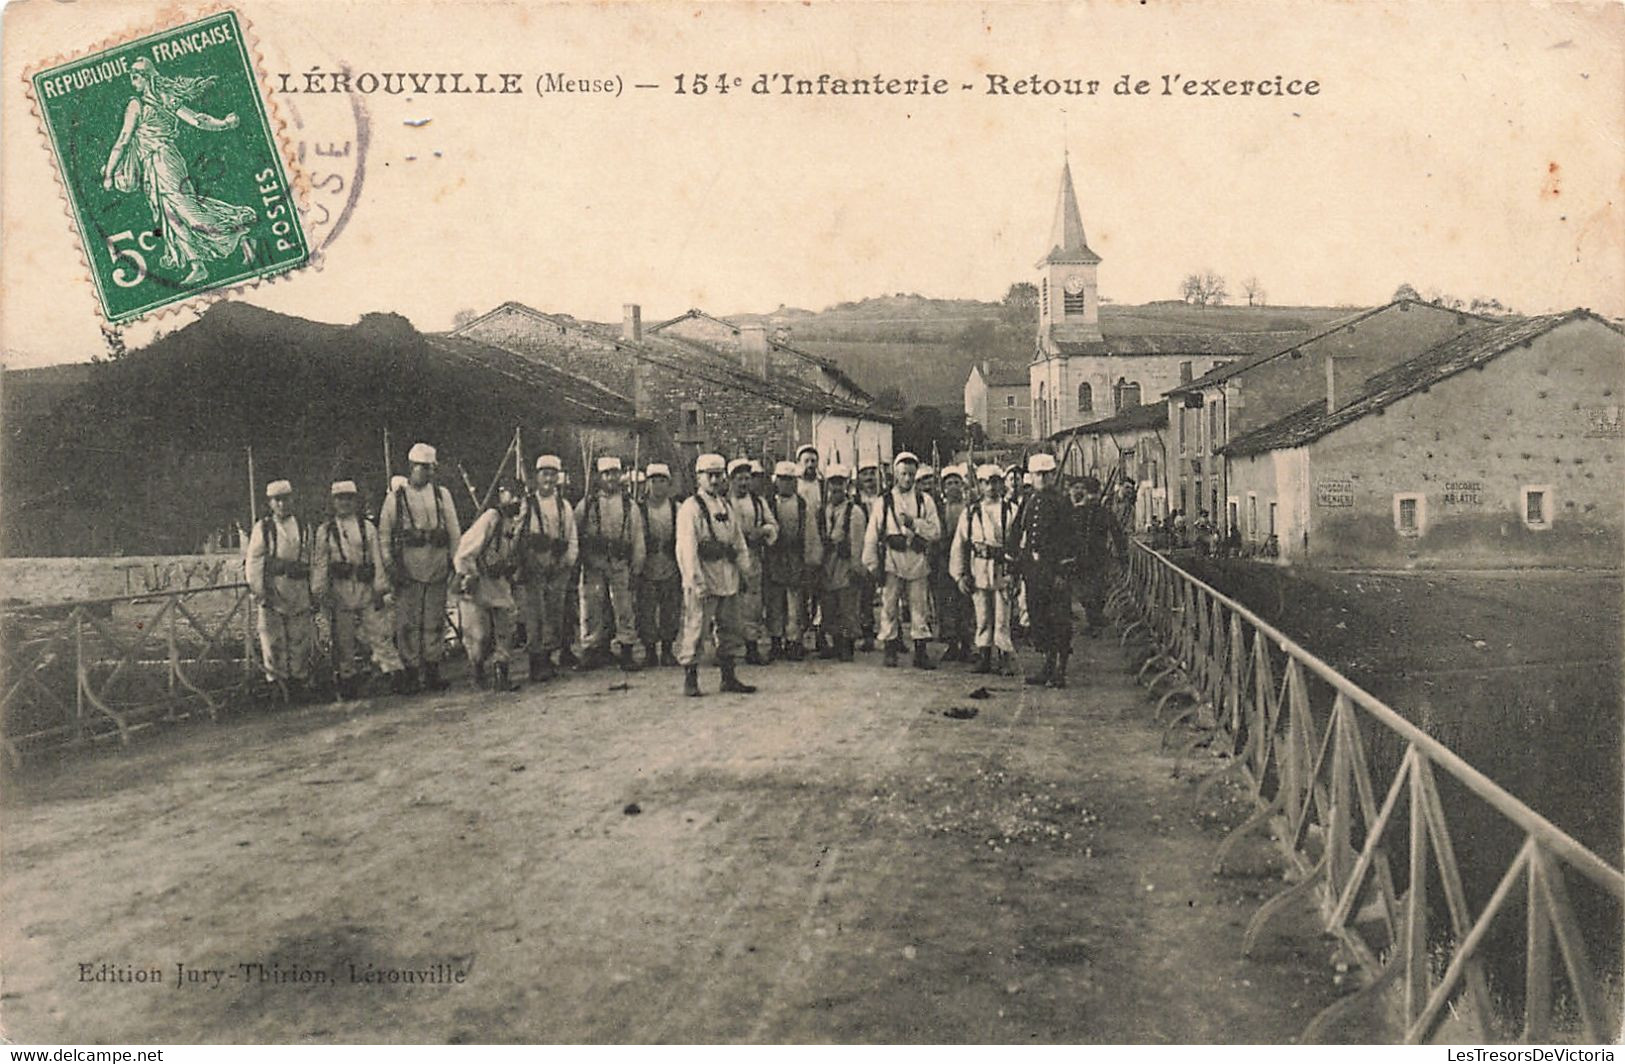 France - Lerouville - 154ème D'infanterie - Retour De L'exercice - Animé - Soldat - Clocher - Carte Postale Ancienne - Commercy